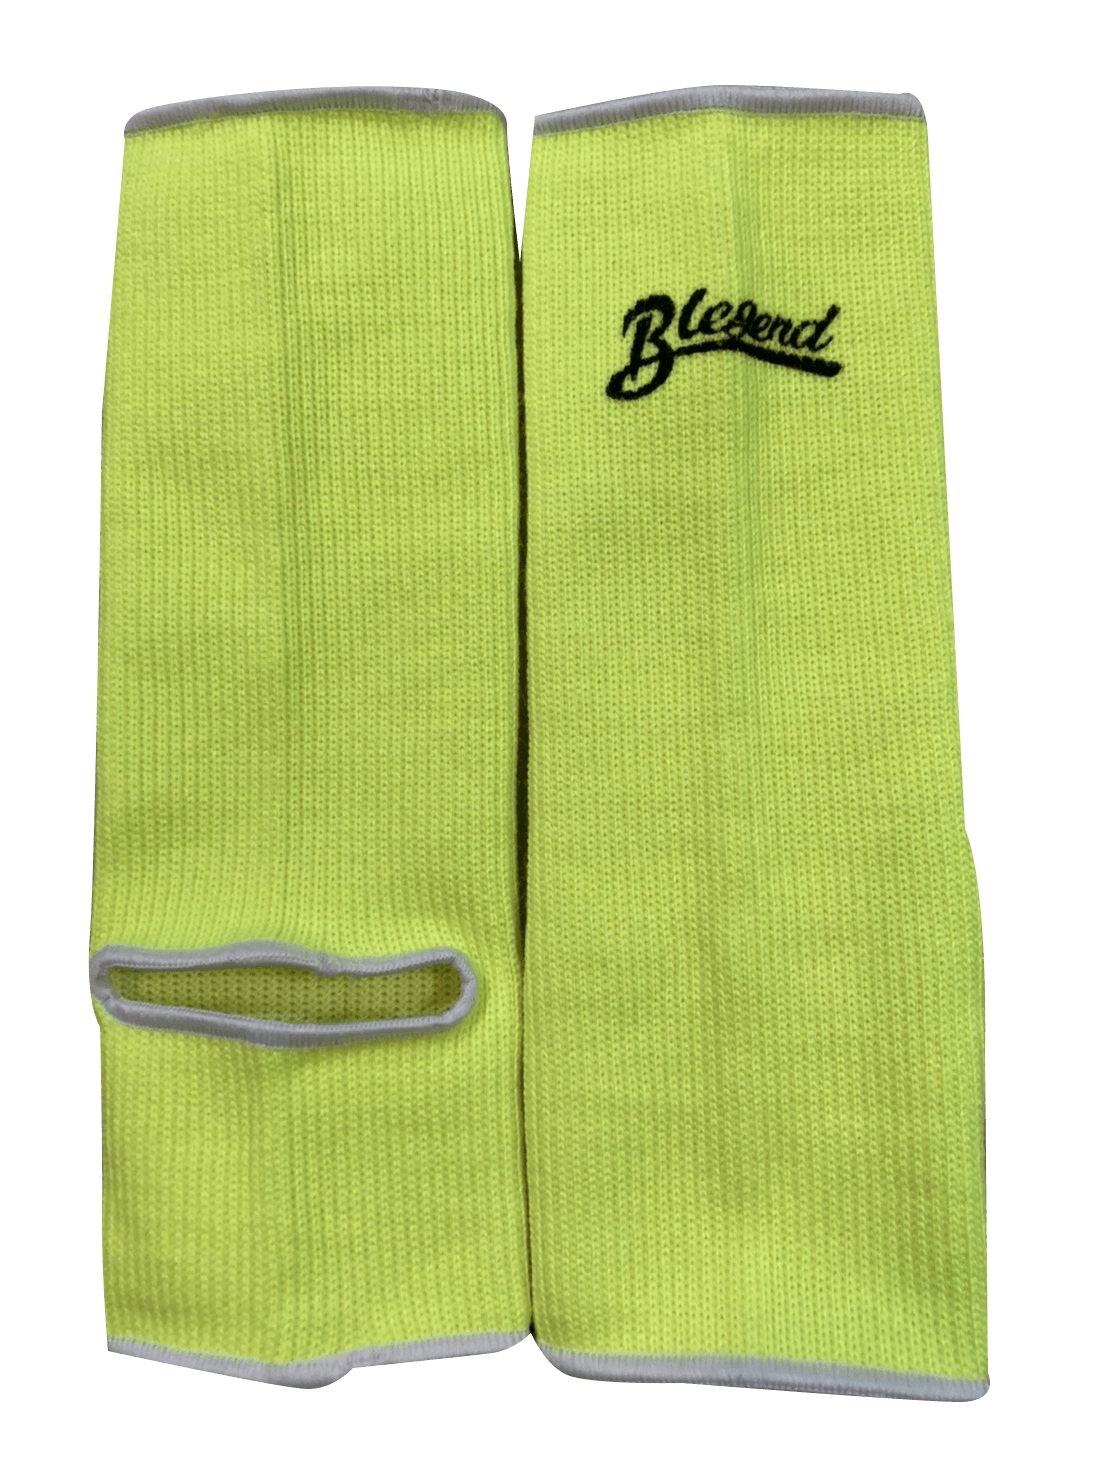 BLEGEND Ankleguards Light Green Blegend